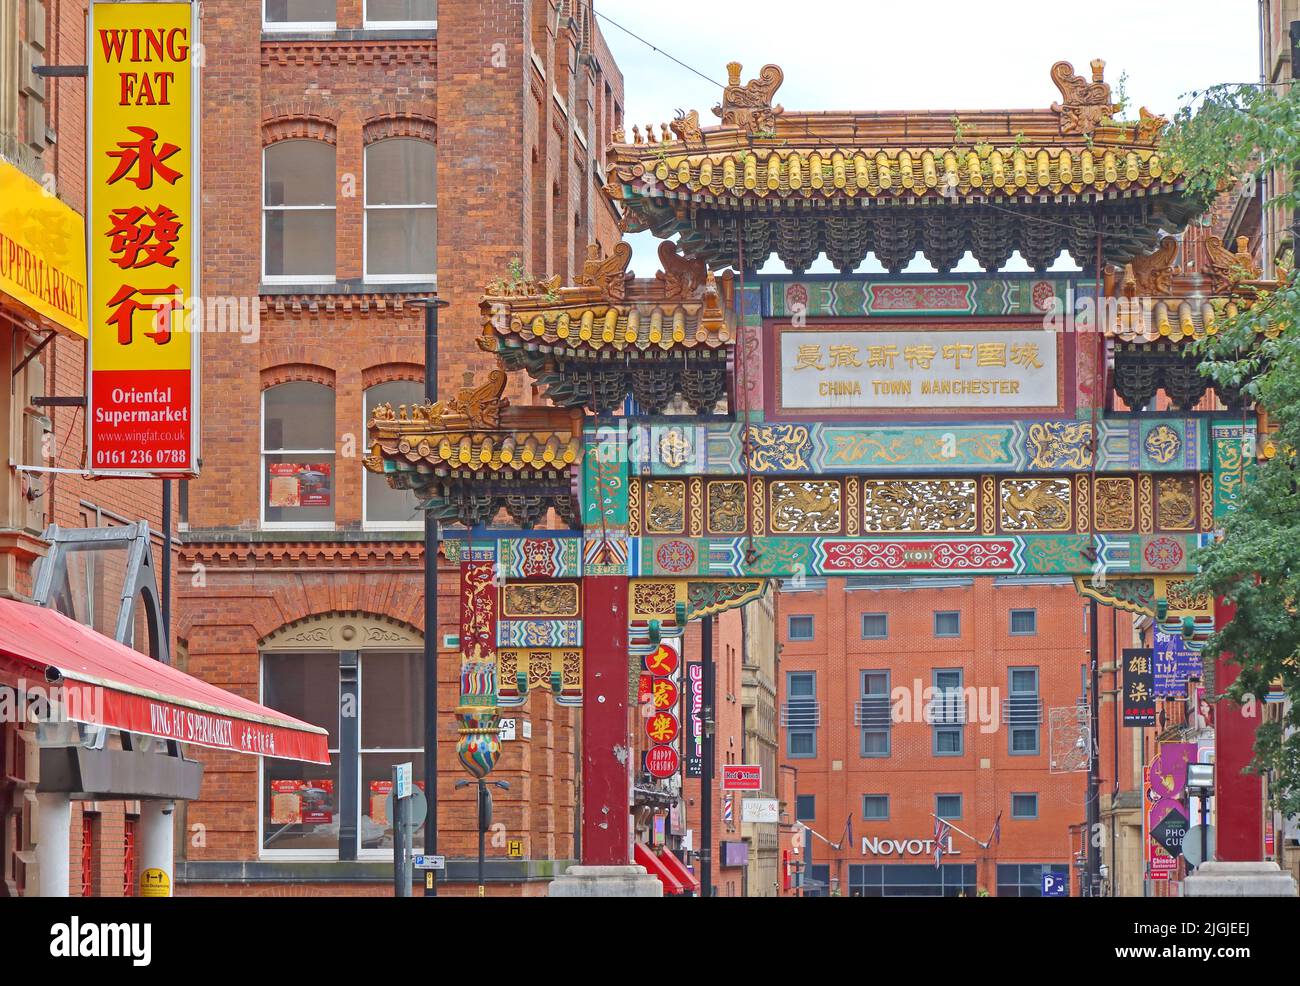 Quartier chinois de Manchester, arcade chinoise, 46 Faulkner St, Manchester, Angleterre, Royaume-Uni, M1 4FH - Arch de Chinatown, construit en 1987 Banque D'Images